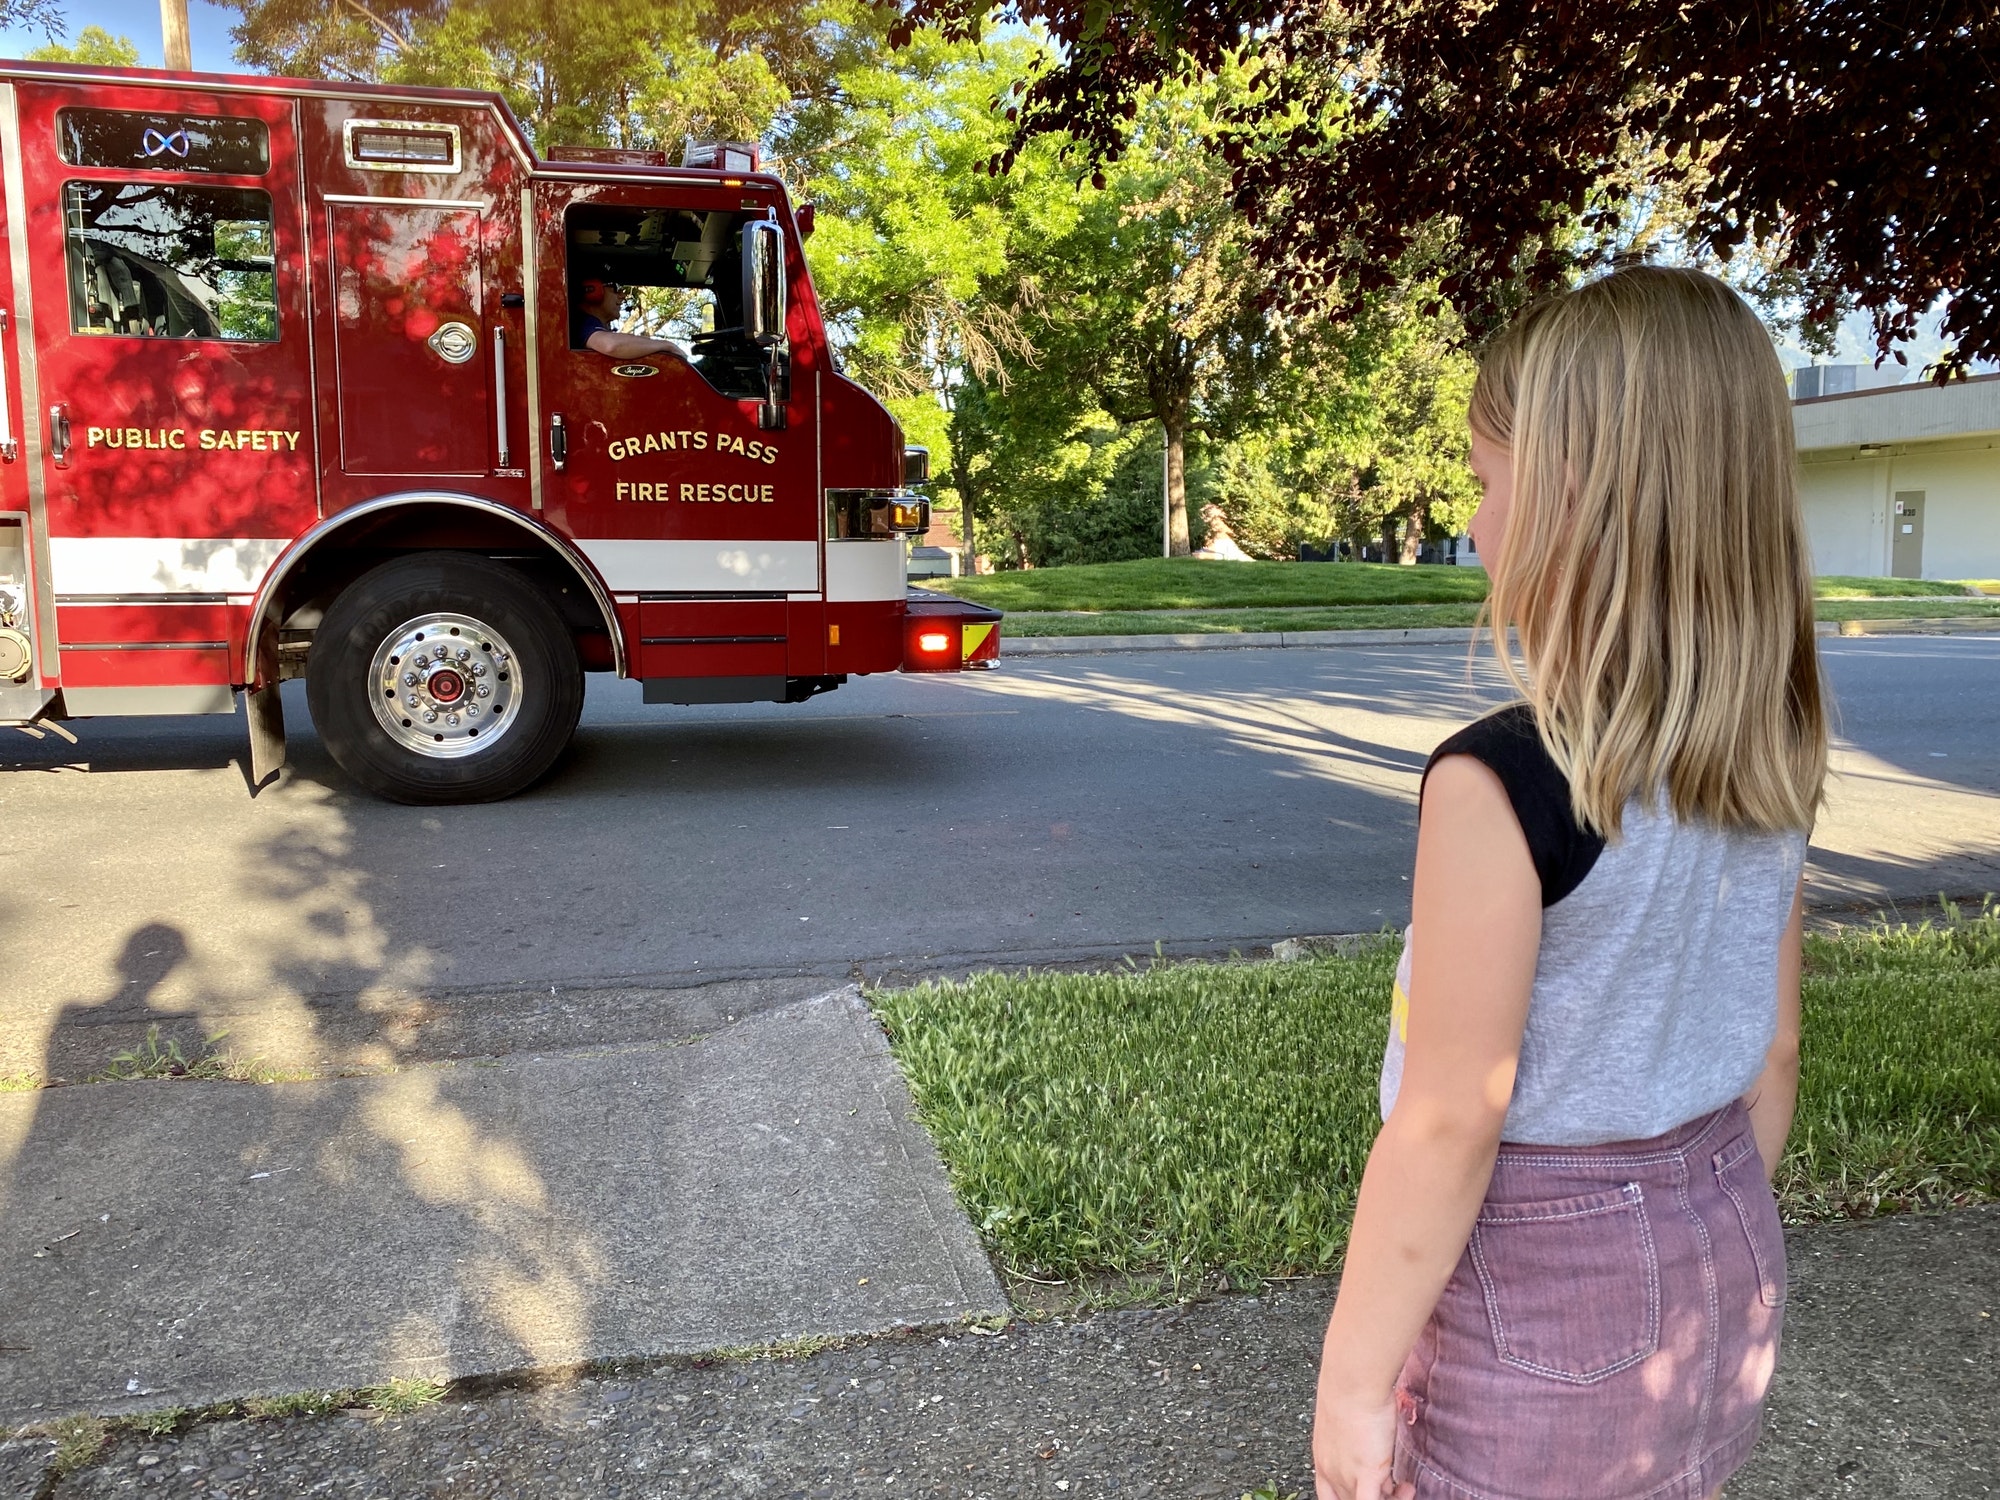 A little girl watching a fire truck.